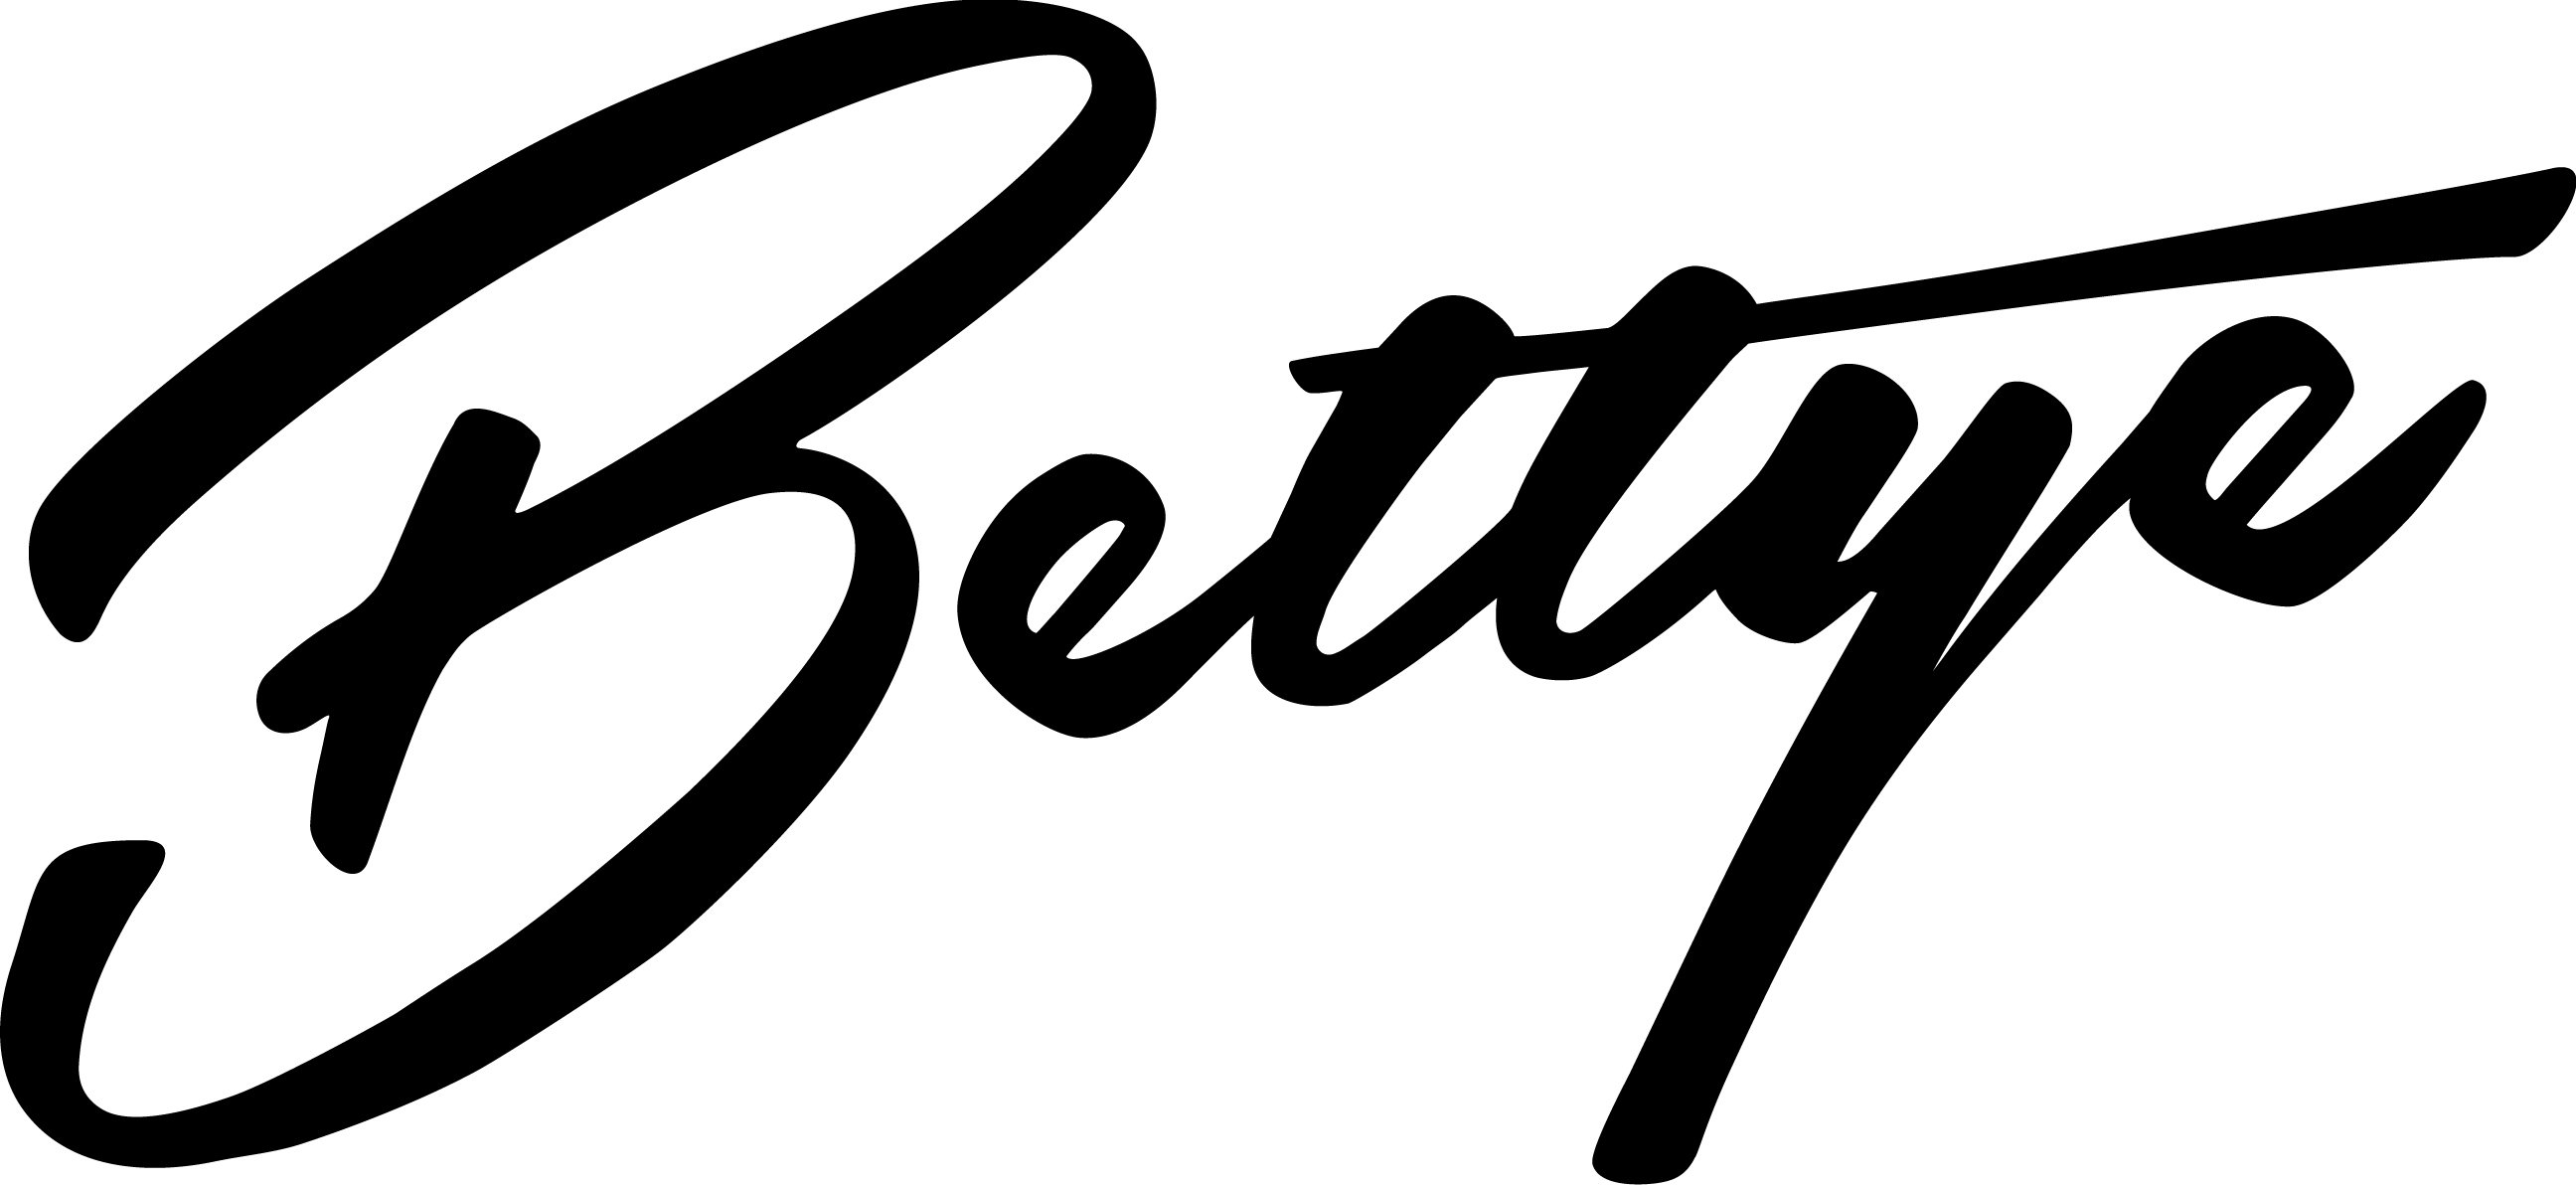 BETTYE